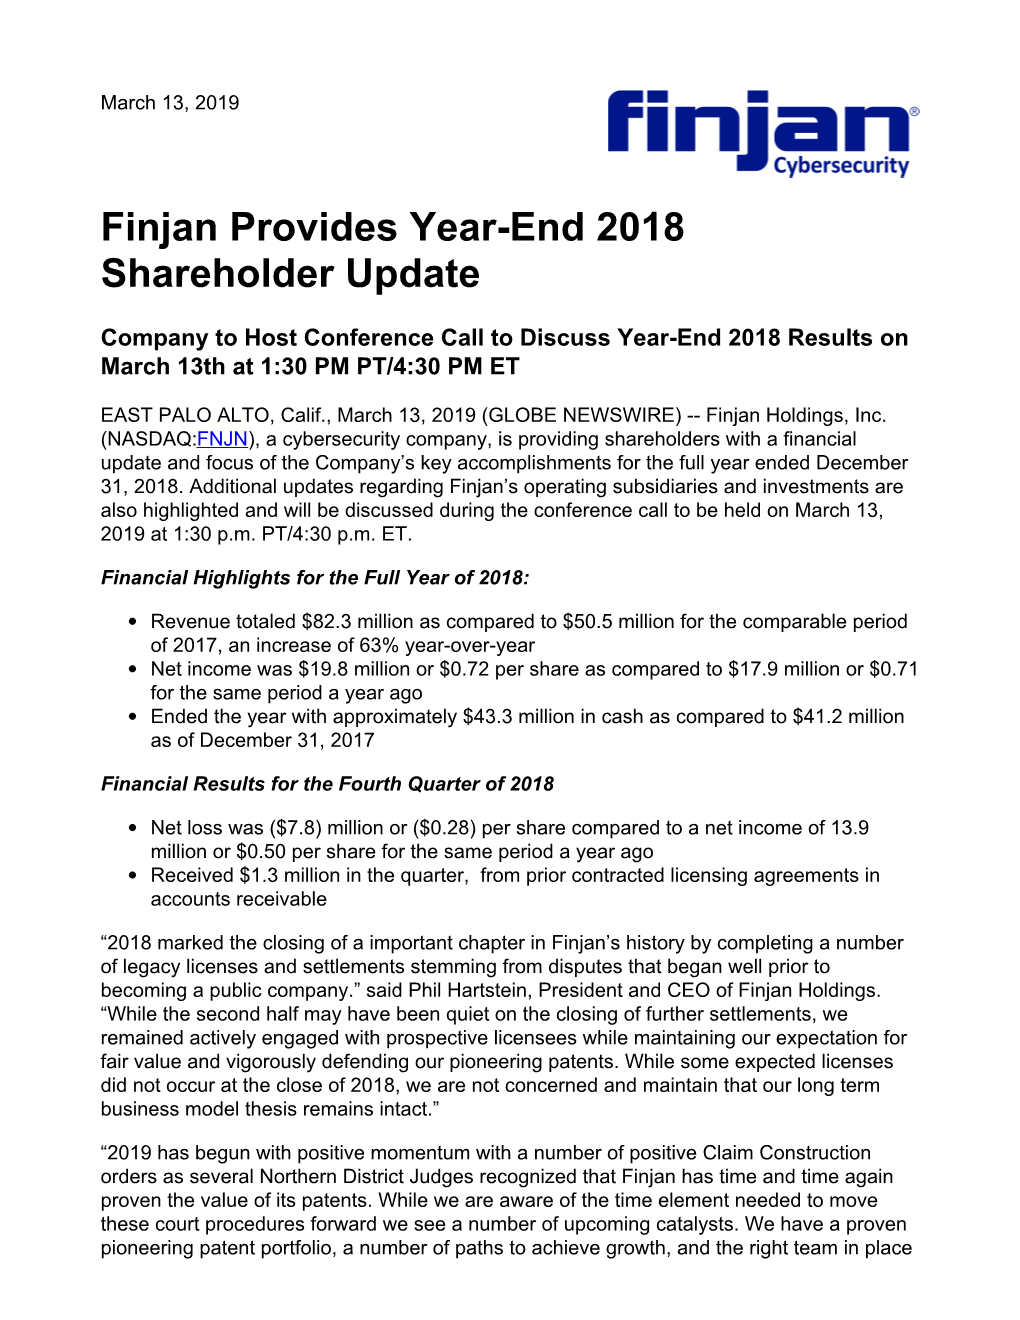 Finjan Provides Year-End 2018 Shareholder Update